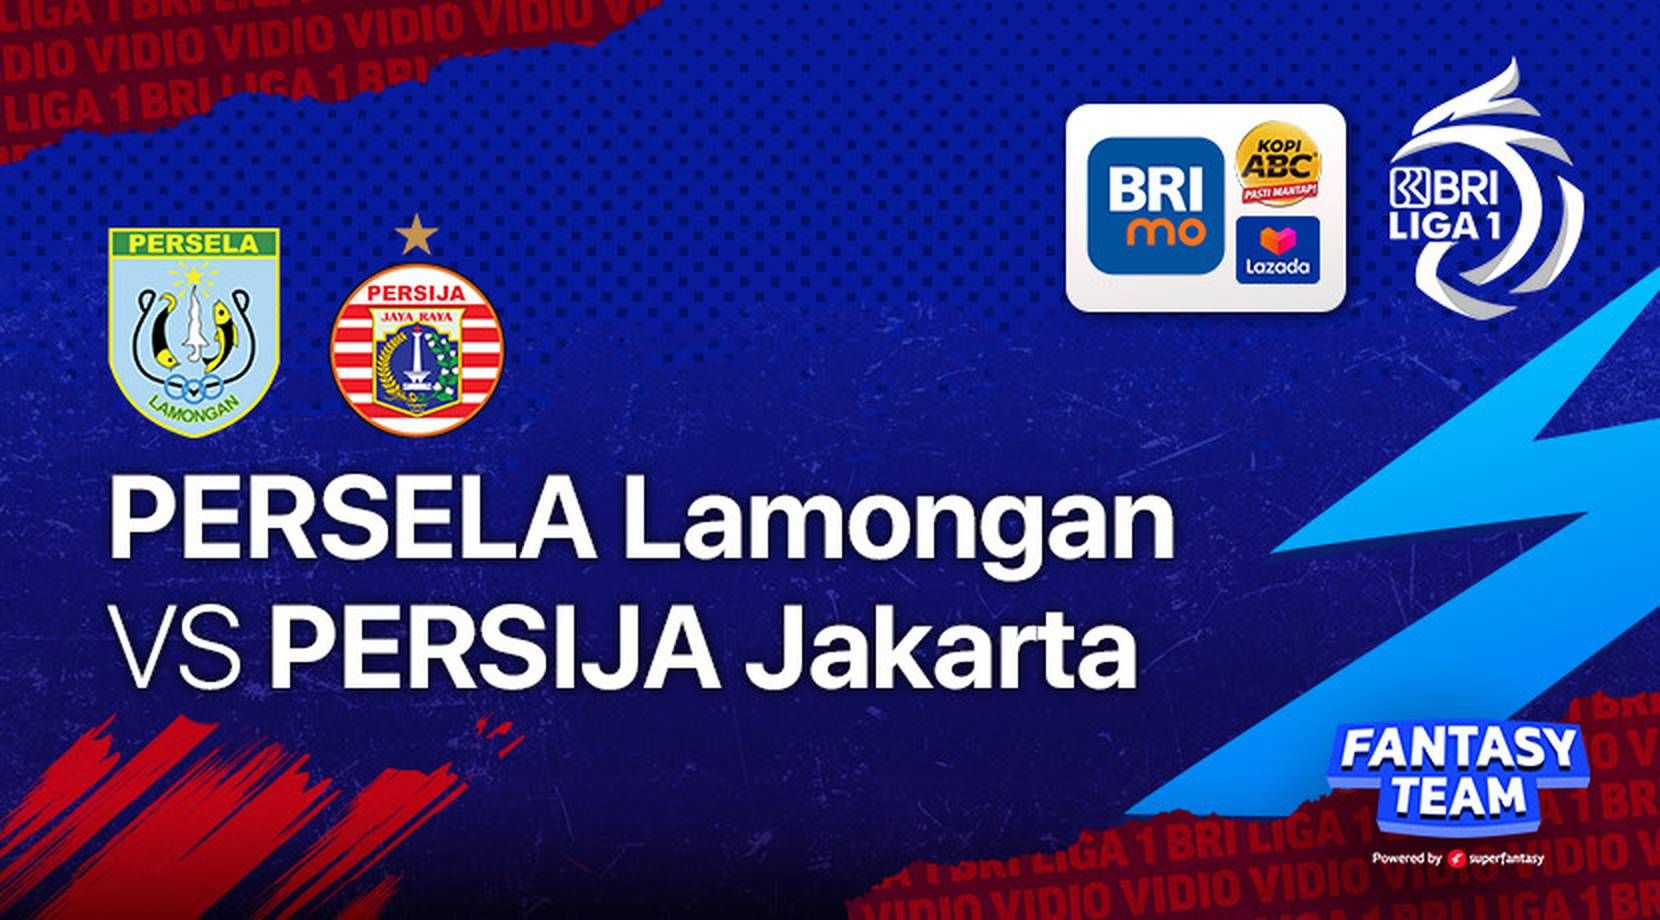 Prediksi Skor Persela Lamongan vs Persija Jakarta BRI Liga 1 2022 Malam Ini 15 Januari 2022